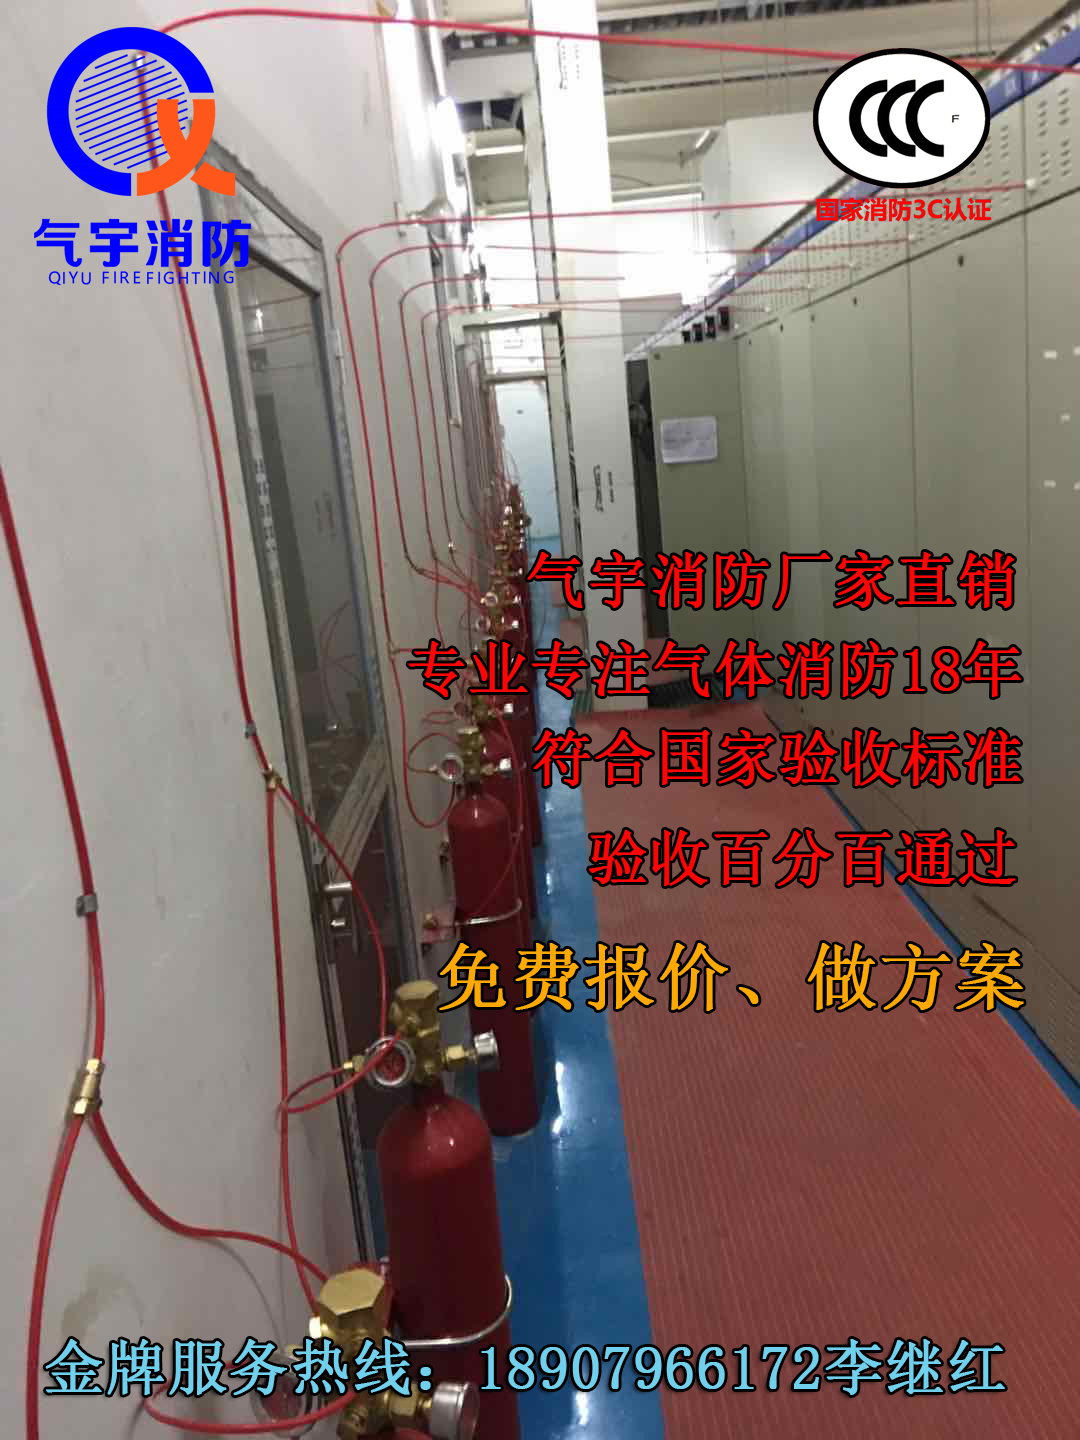 全国批发 新能源充电桩火探管自动感温灭火器 广州气宇生产厂家优惠价图片